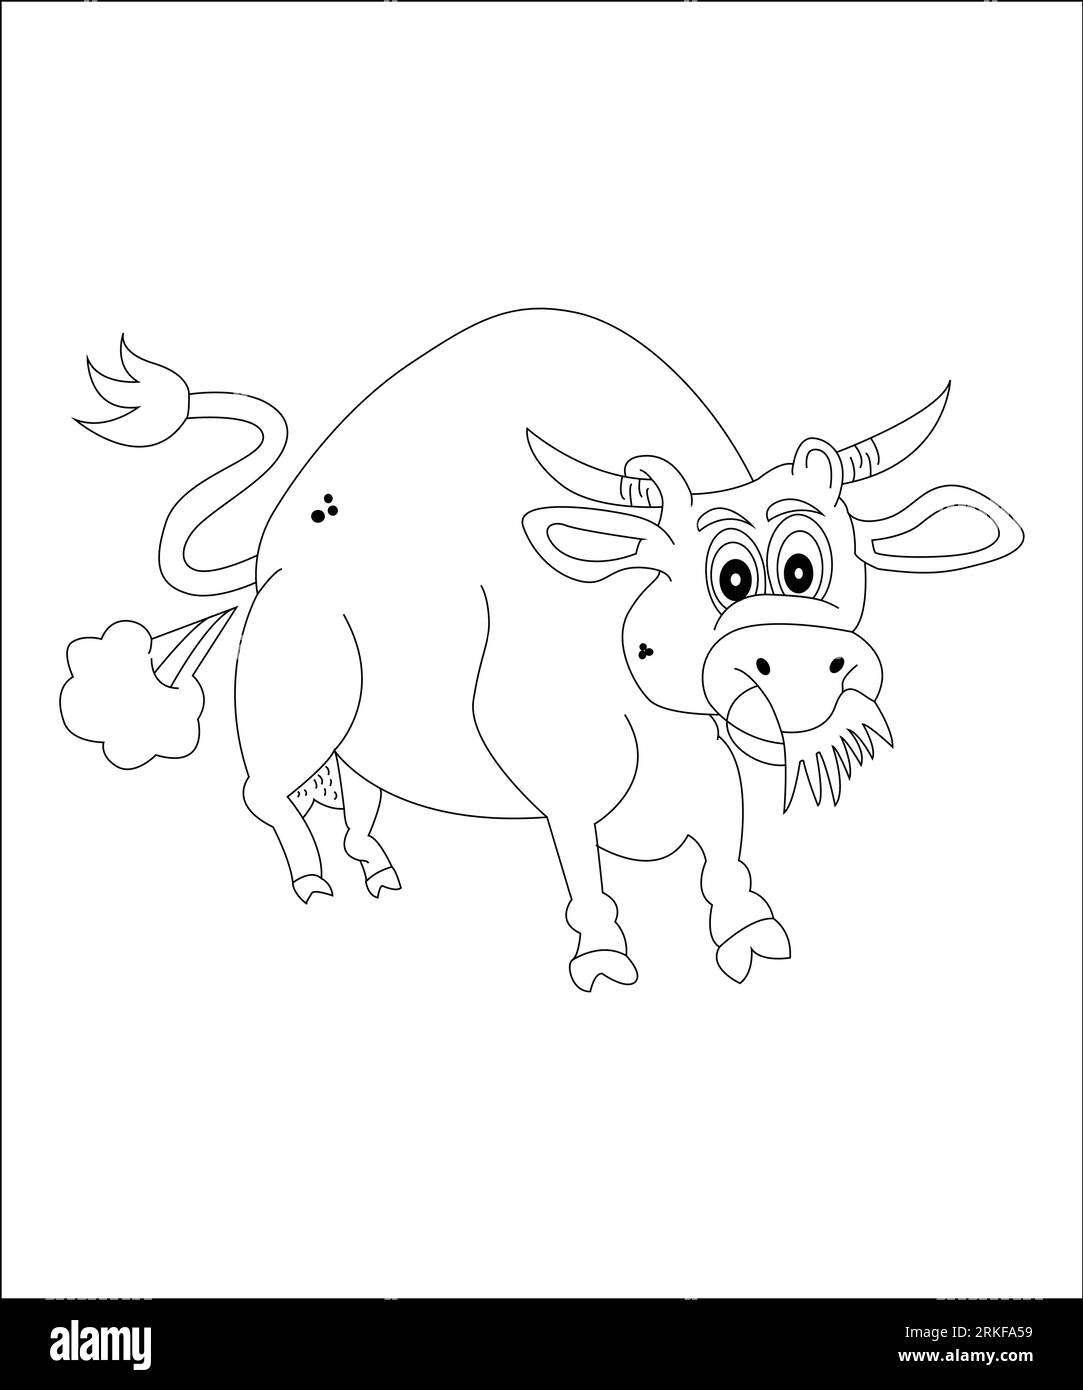 Farting Animals Coloring Page divertente libro da colorare degli animali (Funny Animal Coloring Book Page) Illustrazione Vettoriale